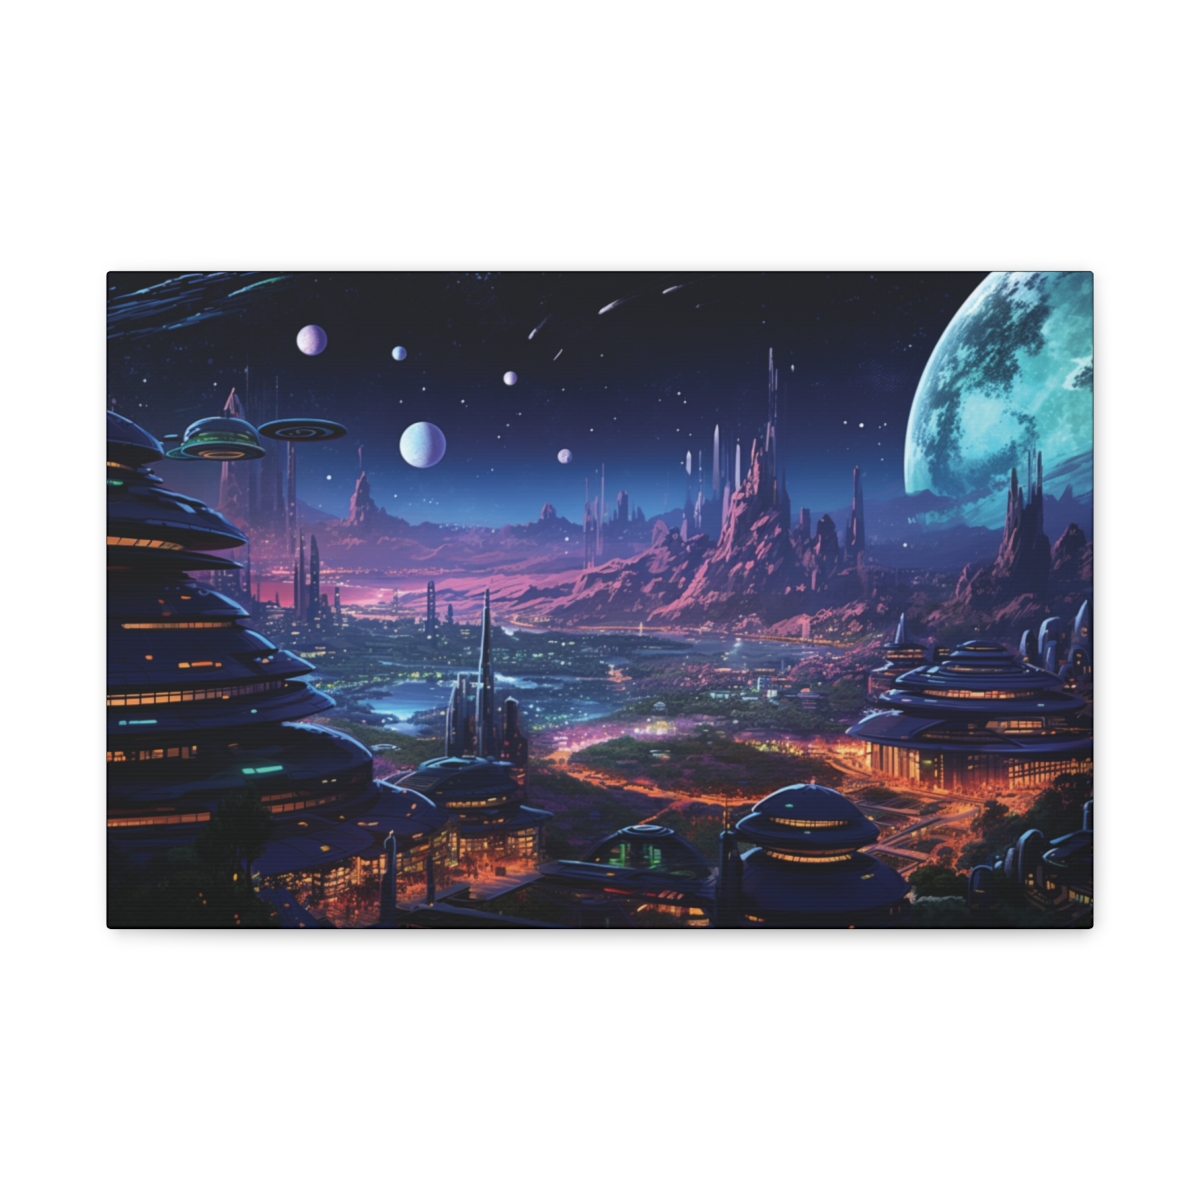 Sci-fi Art Canvas Print: The Citadel